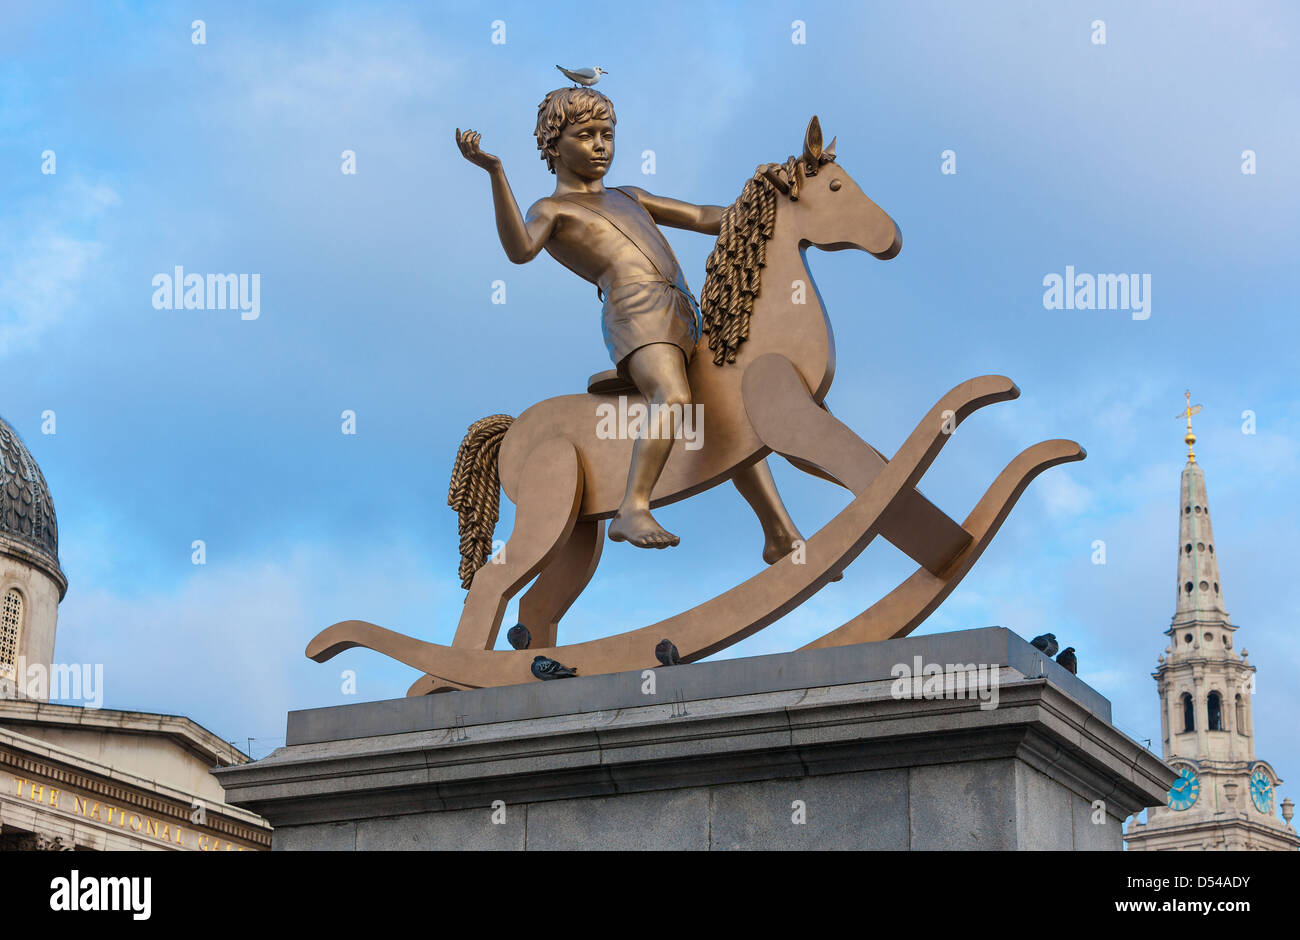 Ragazzo su un cavallo a dondolo scultura, quarto plinto, Trafalgar Square, London, England, Regno Unito Foto Stock